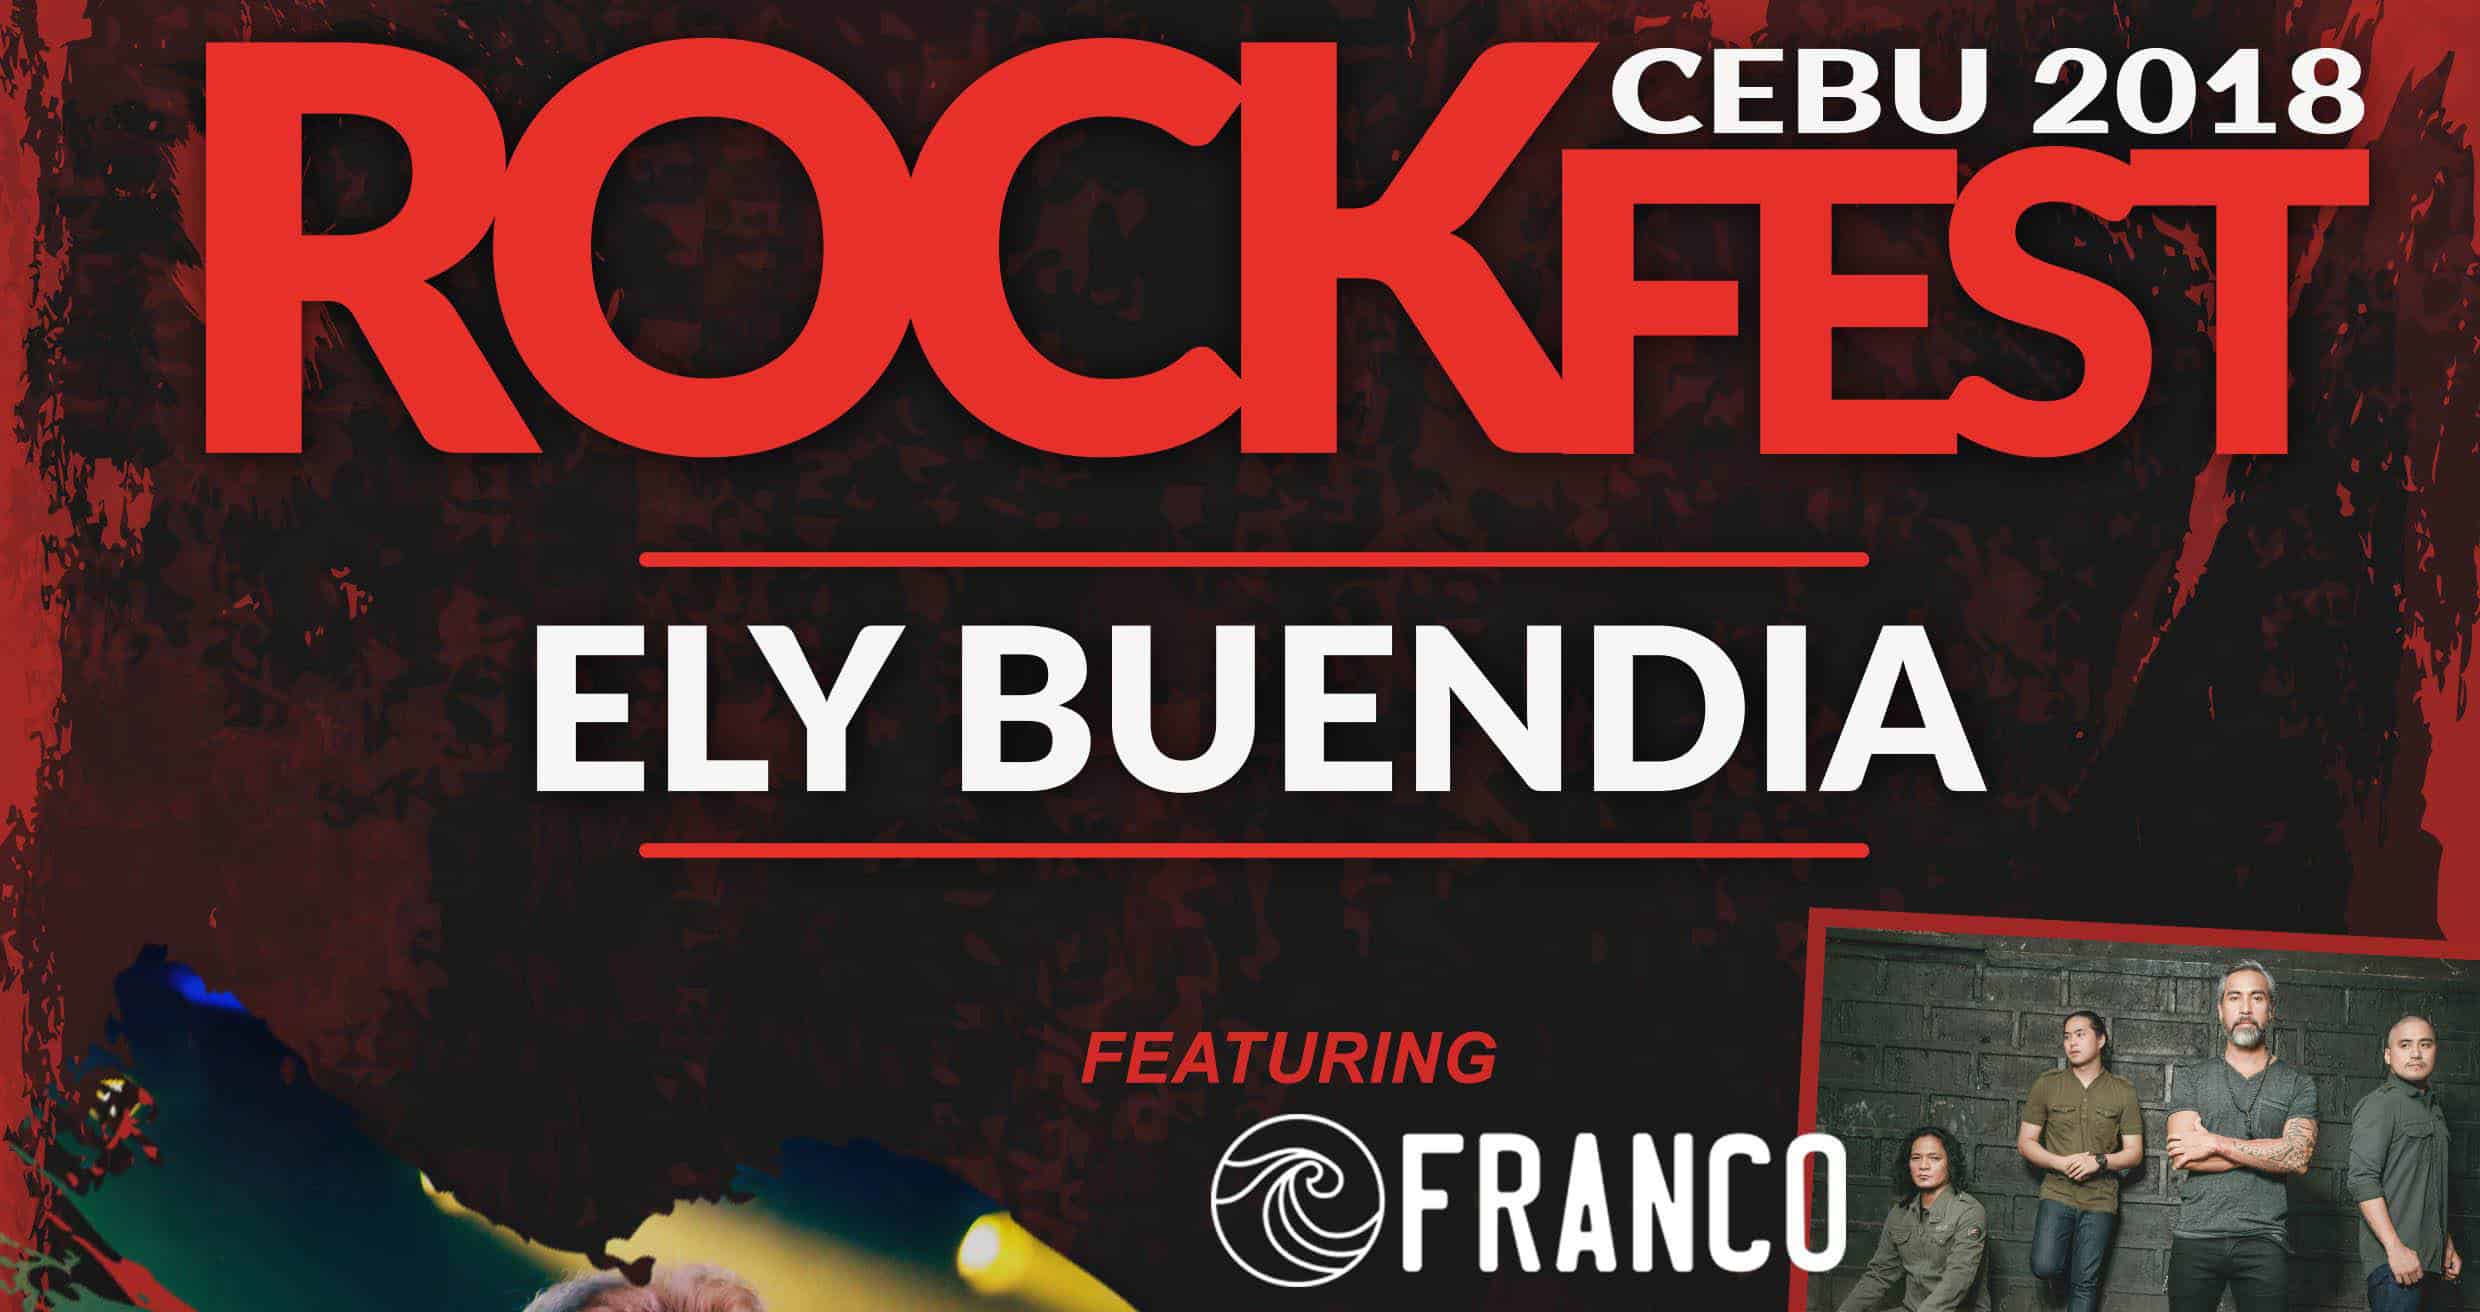 Rockfest 2018 Cebu